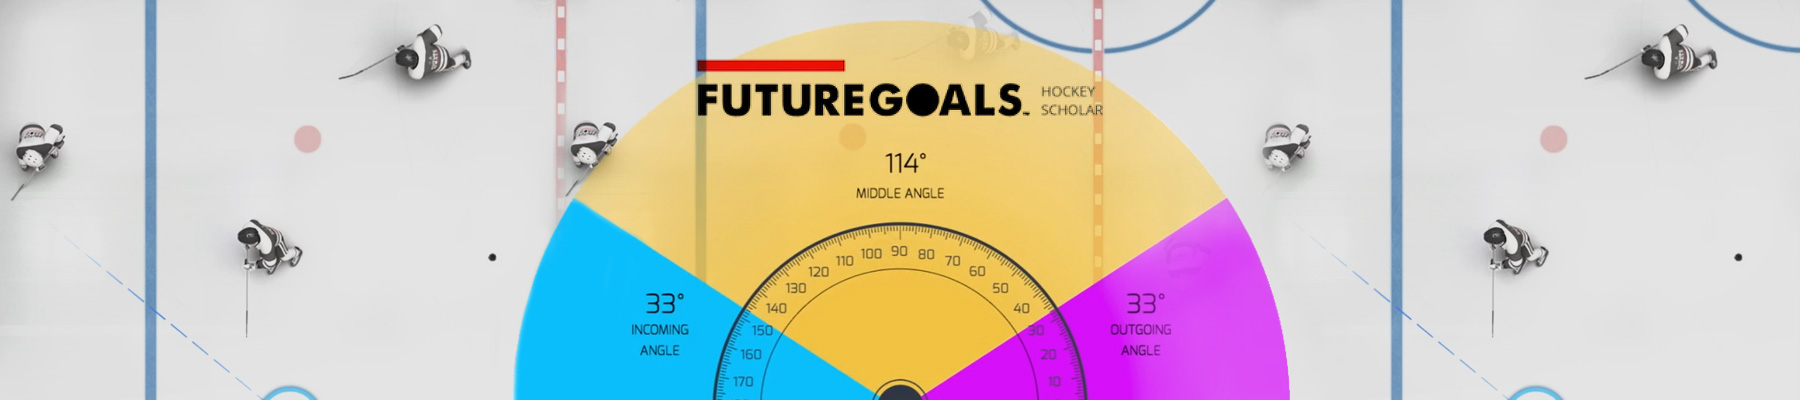 TGA-header-case-study-future-goals-feat3b-1800x400